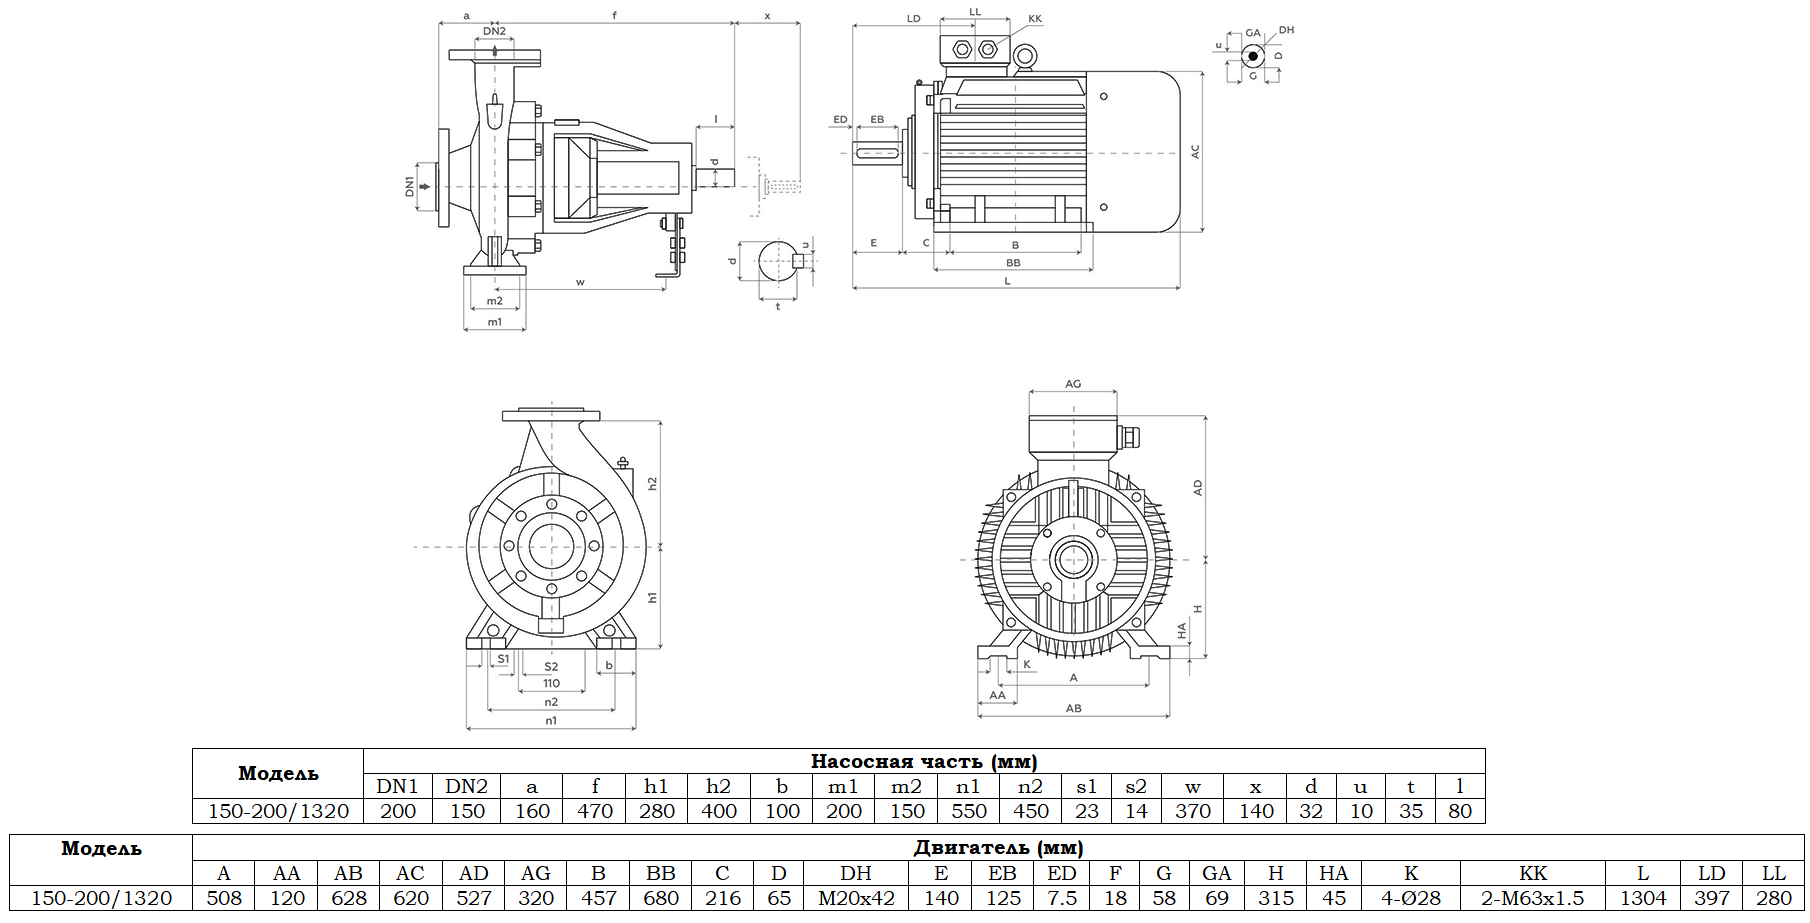 Габаритный чертеж модели Zenova SENSA 150-200/1320